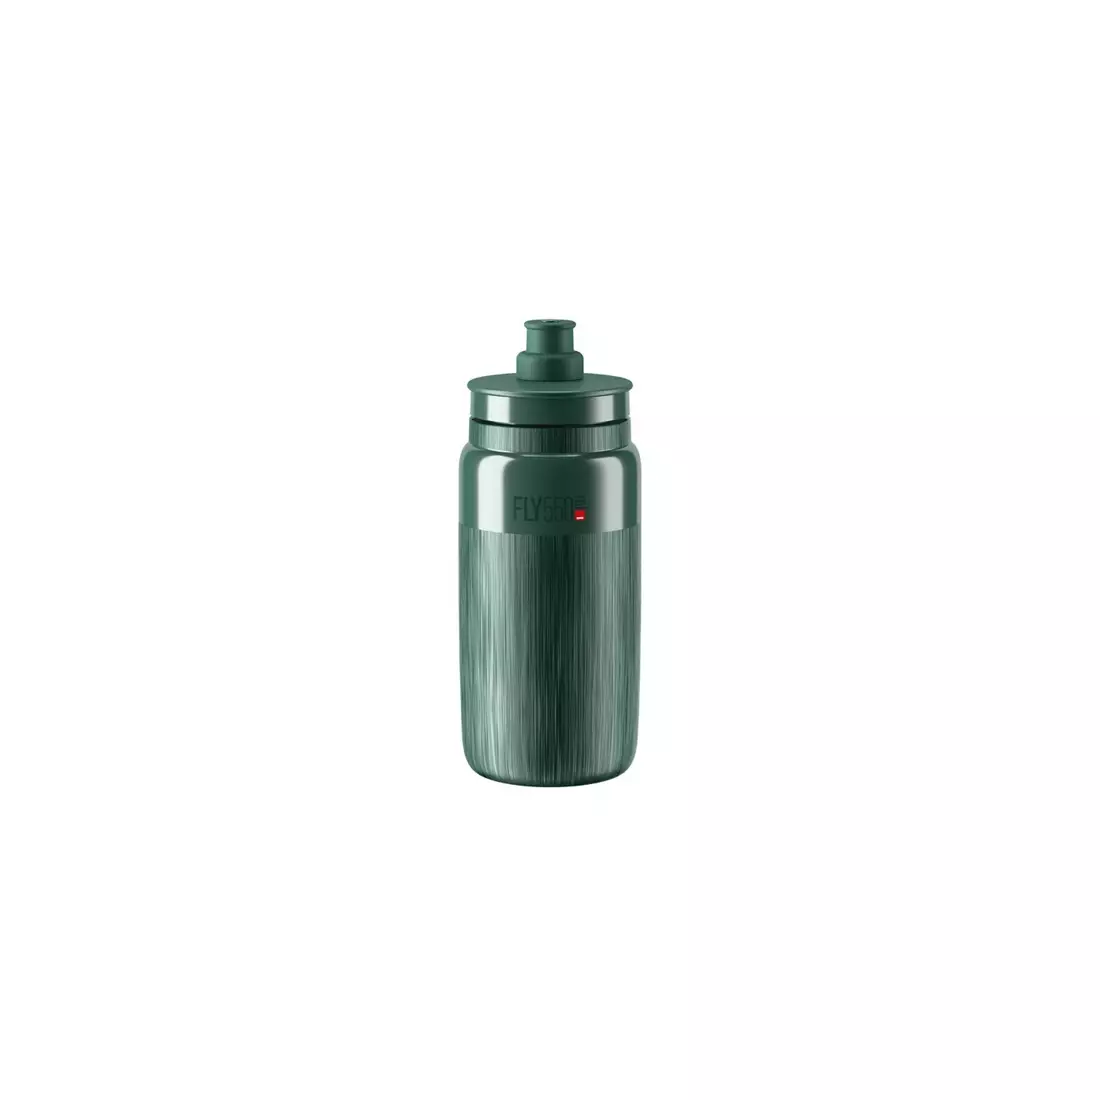 ELITE FLY TEX cyklistická fľaša na vodu 550 ml, tmavozelený